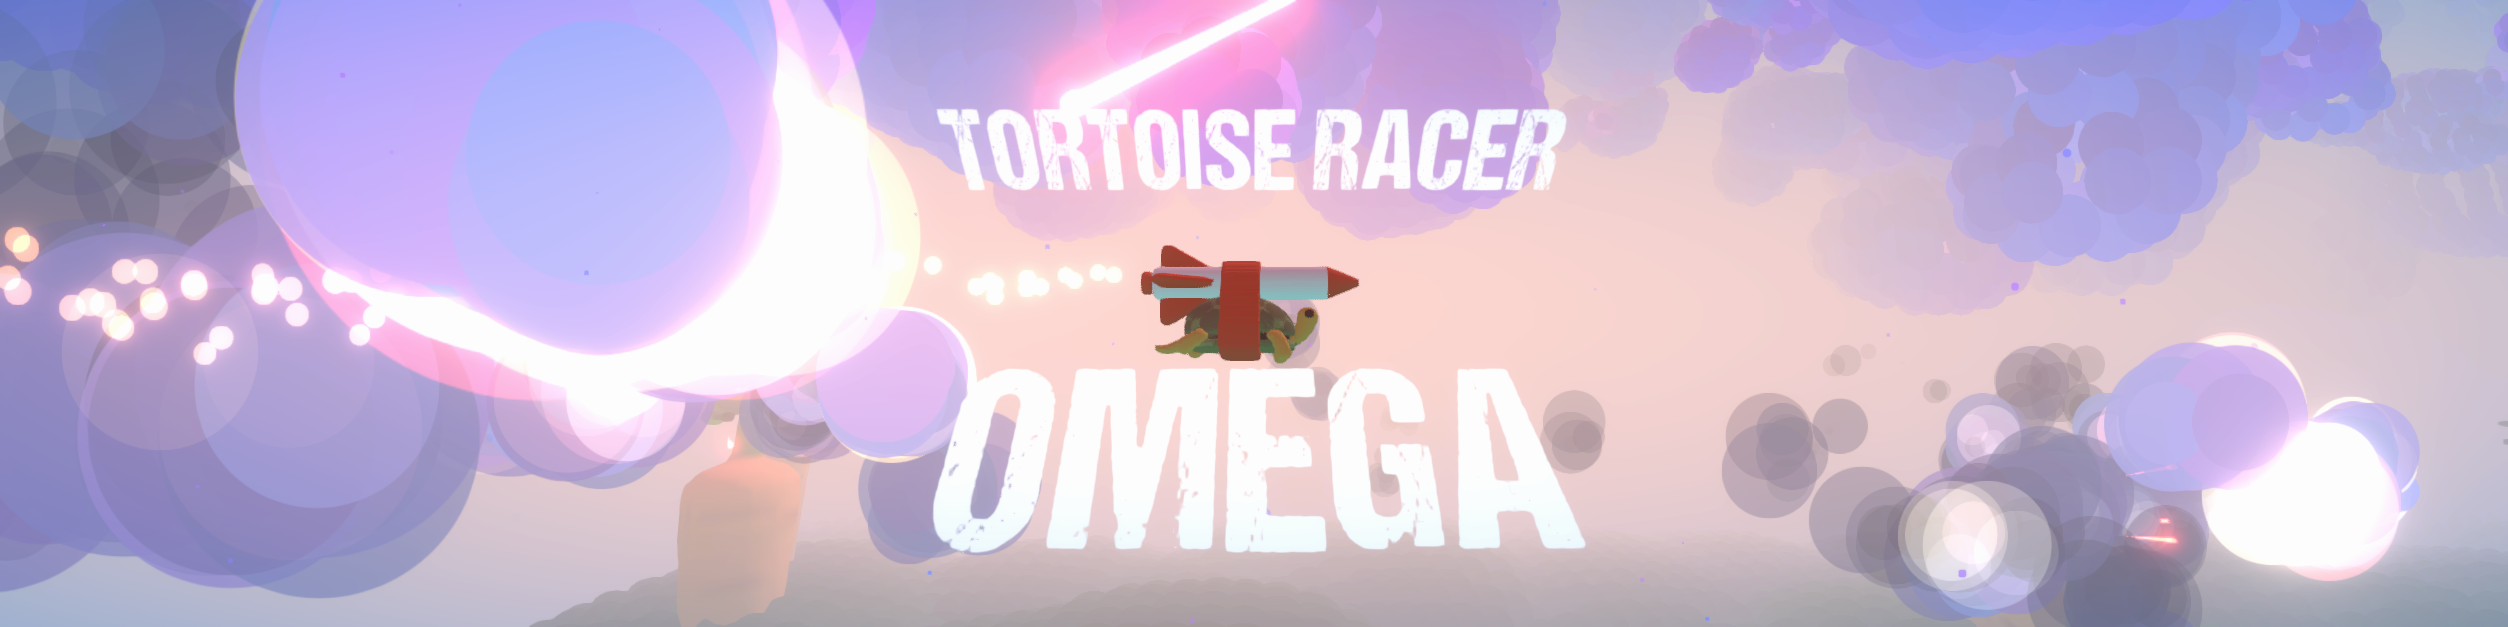 Tortoise Racer Omega